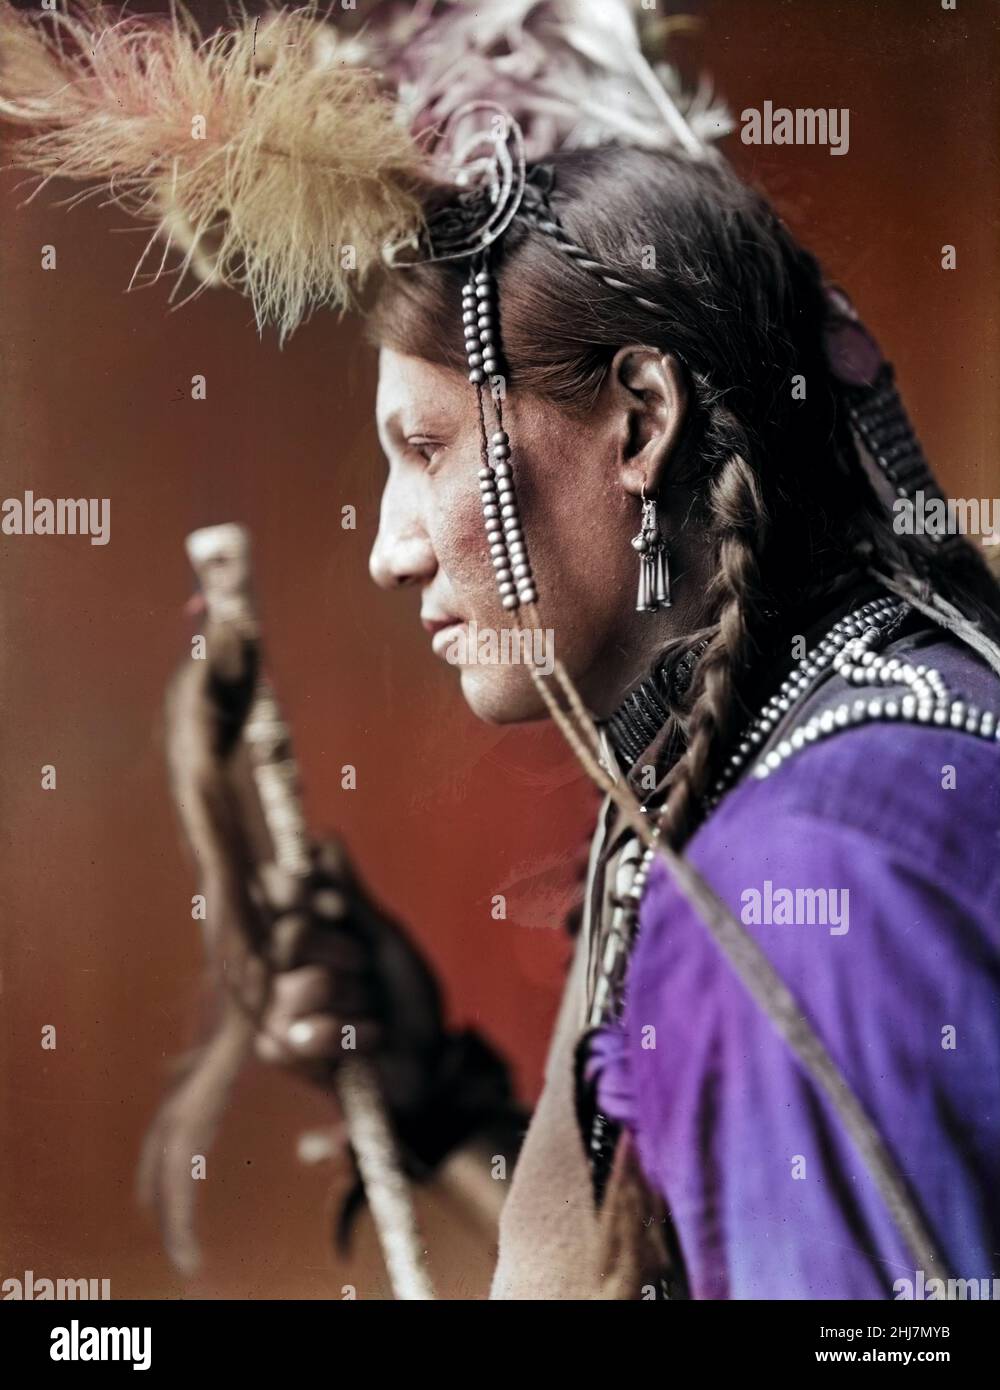 Antike und Vintage-Foto - indianer / Indianer / Indianer. Amos Little, Sioux, Amerikanischer Inder. Koloriertes Foto. Stockfoto